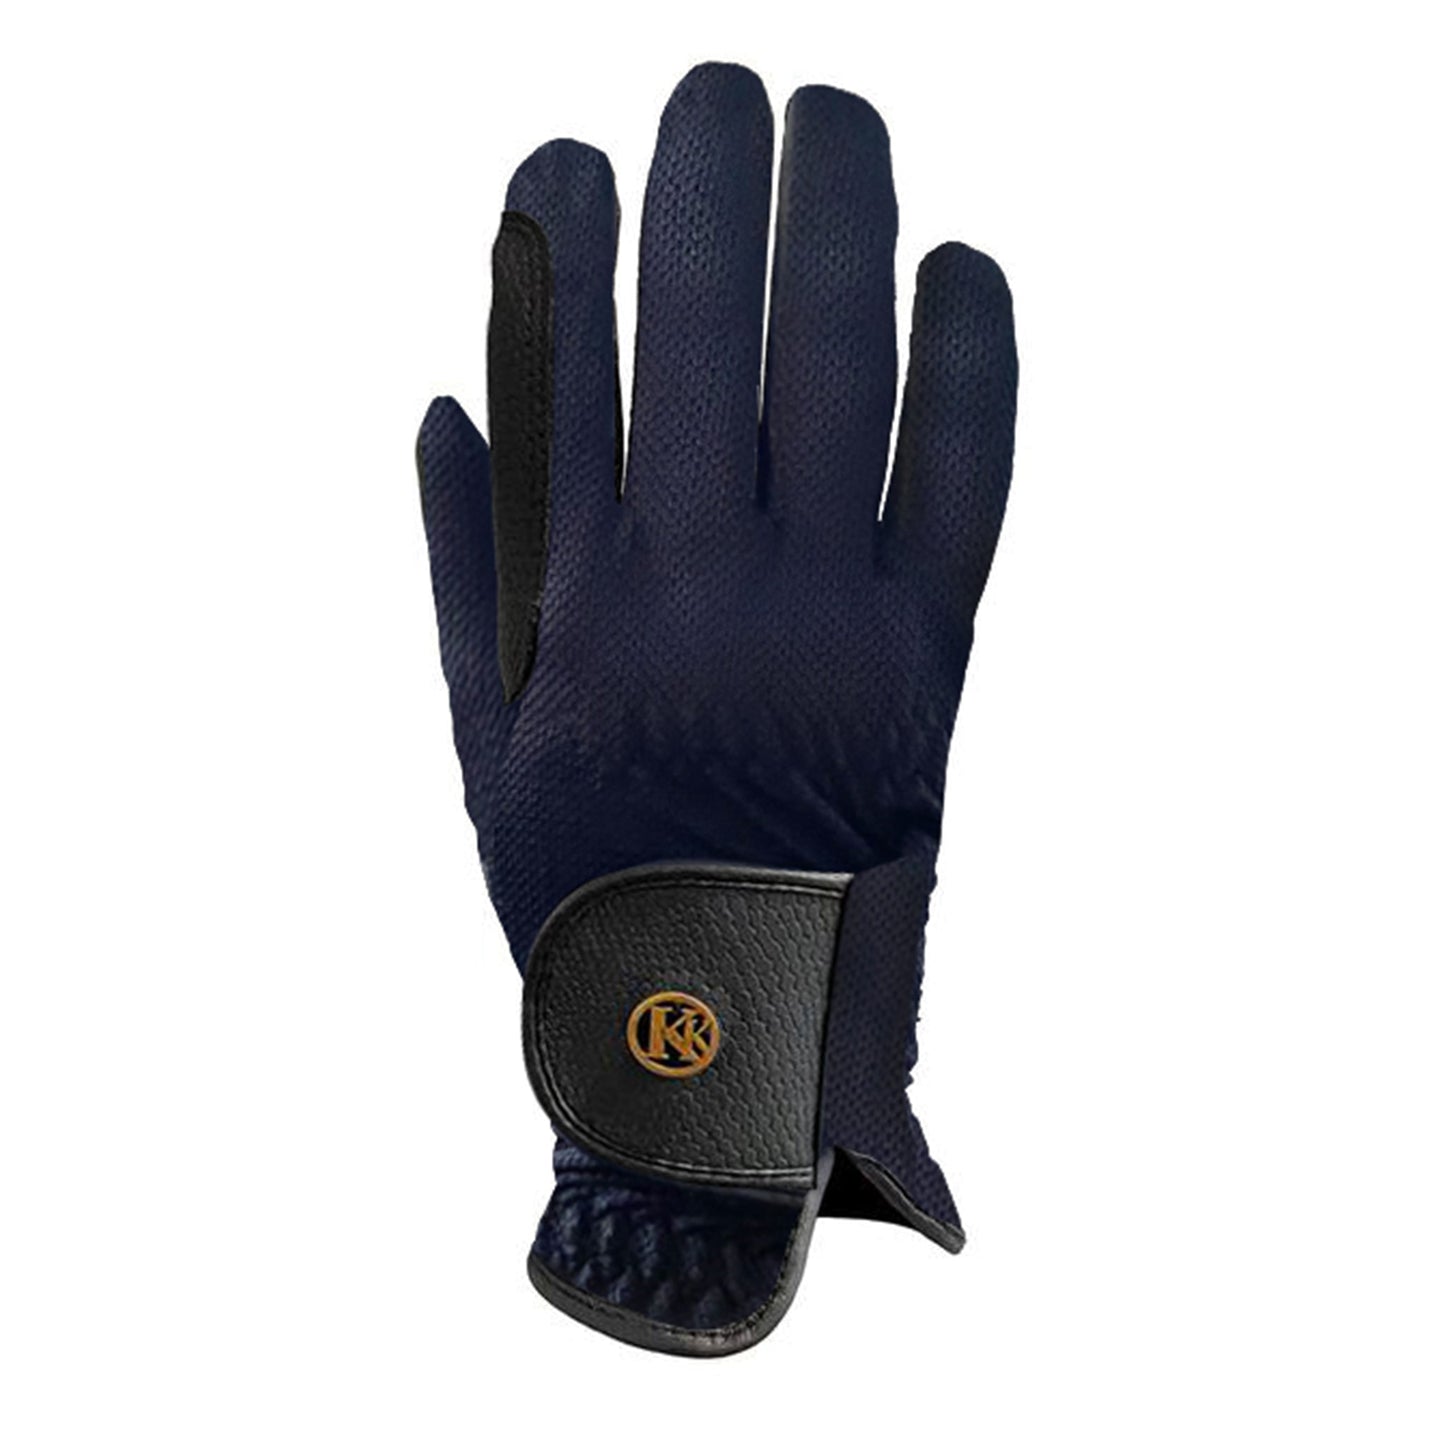 Kunkle Gloves Navy Mesh Gloves 15 Sizes